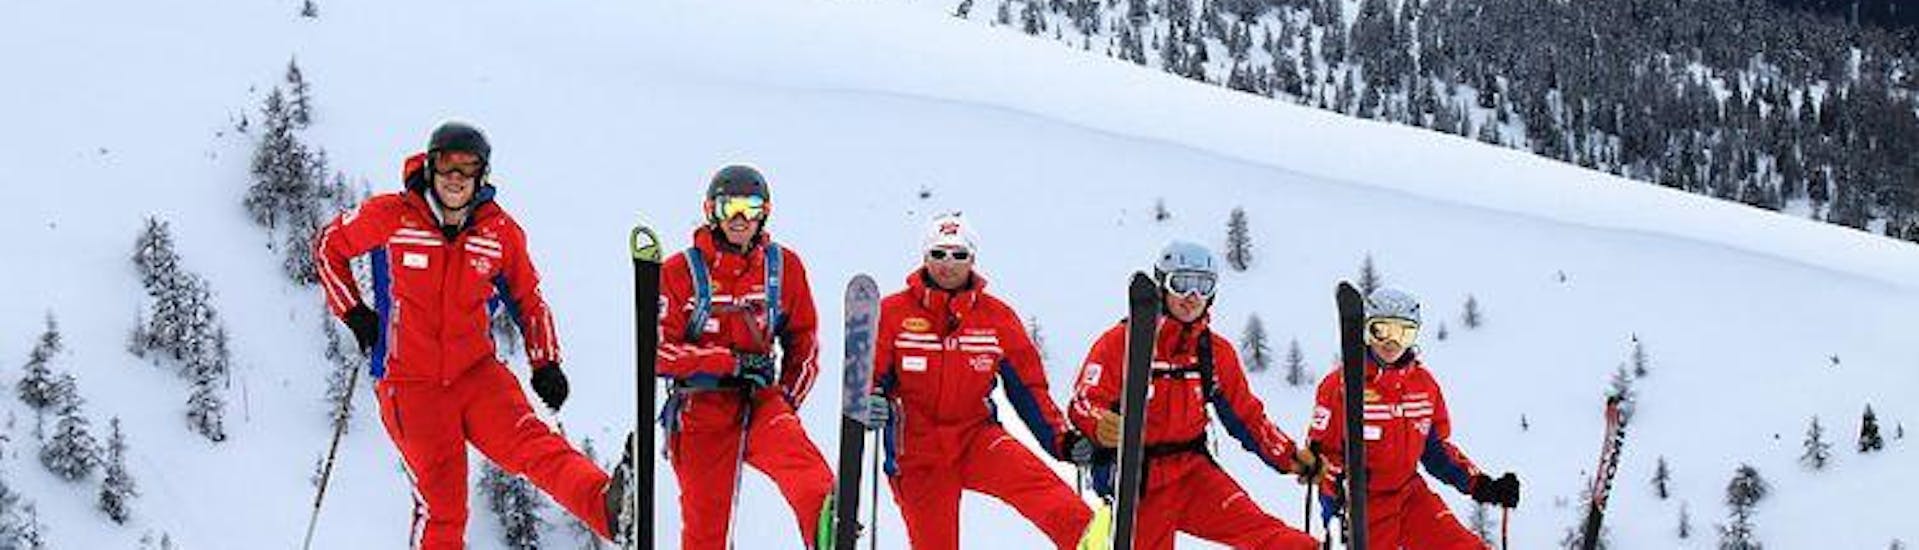 Un gruppo di maestri di sci si diverte sulla neve durante il corso di sci per bambini per sciatori di livello intermedio della Scuola di sci Qualitäts-Skischule Brunner Bad Kleinkirchheim.